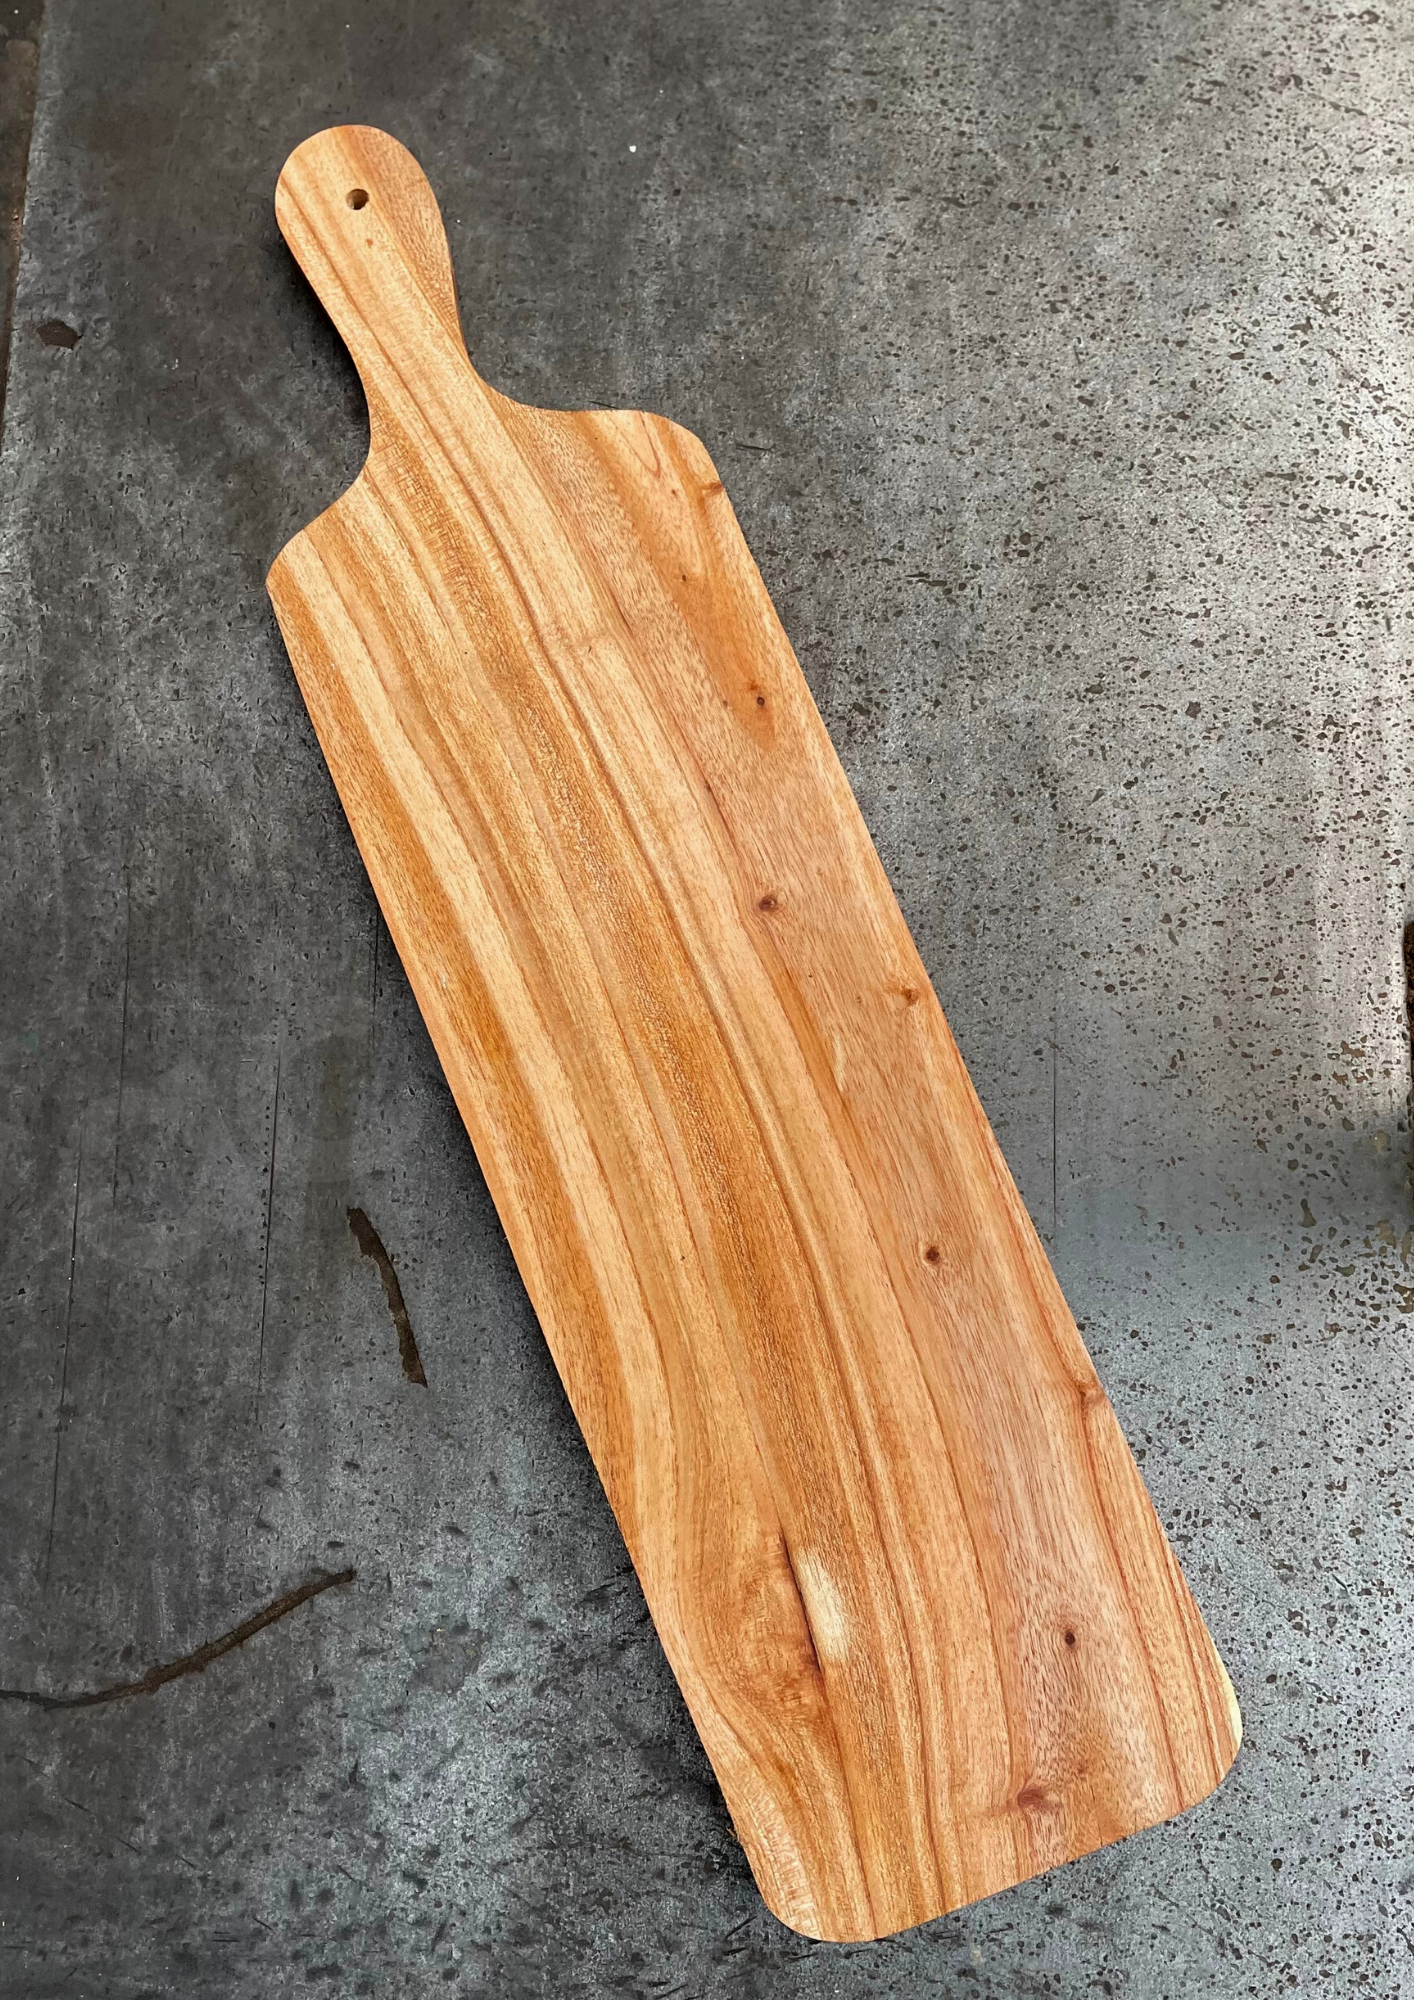 The Foot Log Wooden Platter